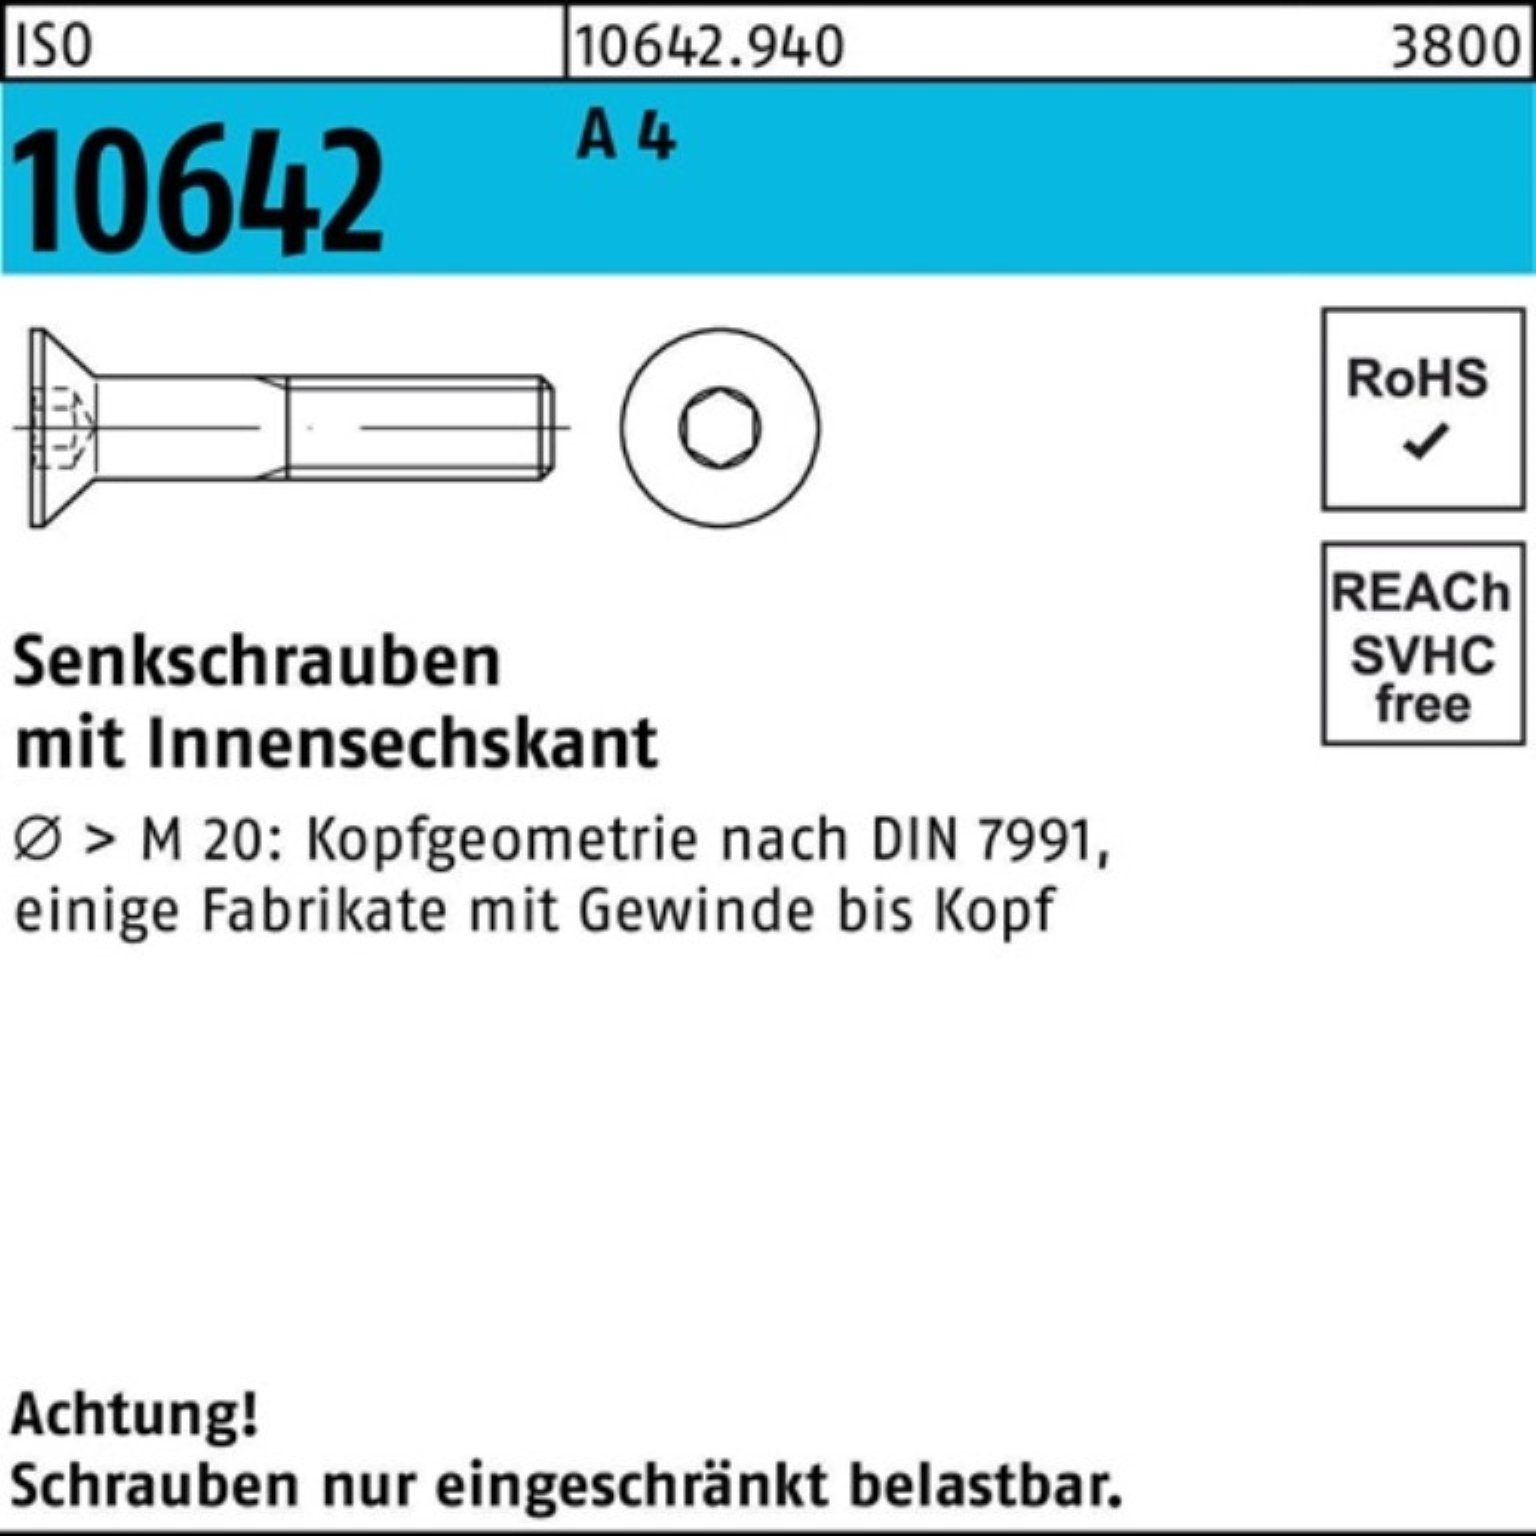 ISO 50 100er Reyher Stück Pack ISO Senkschraube 4 M10x Senkschraube A 100 Innen-6kt 10642